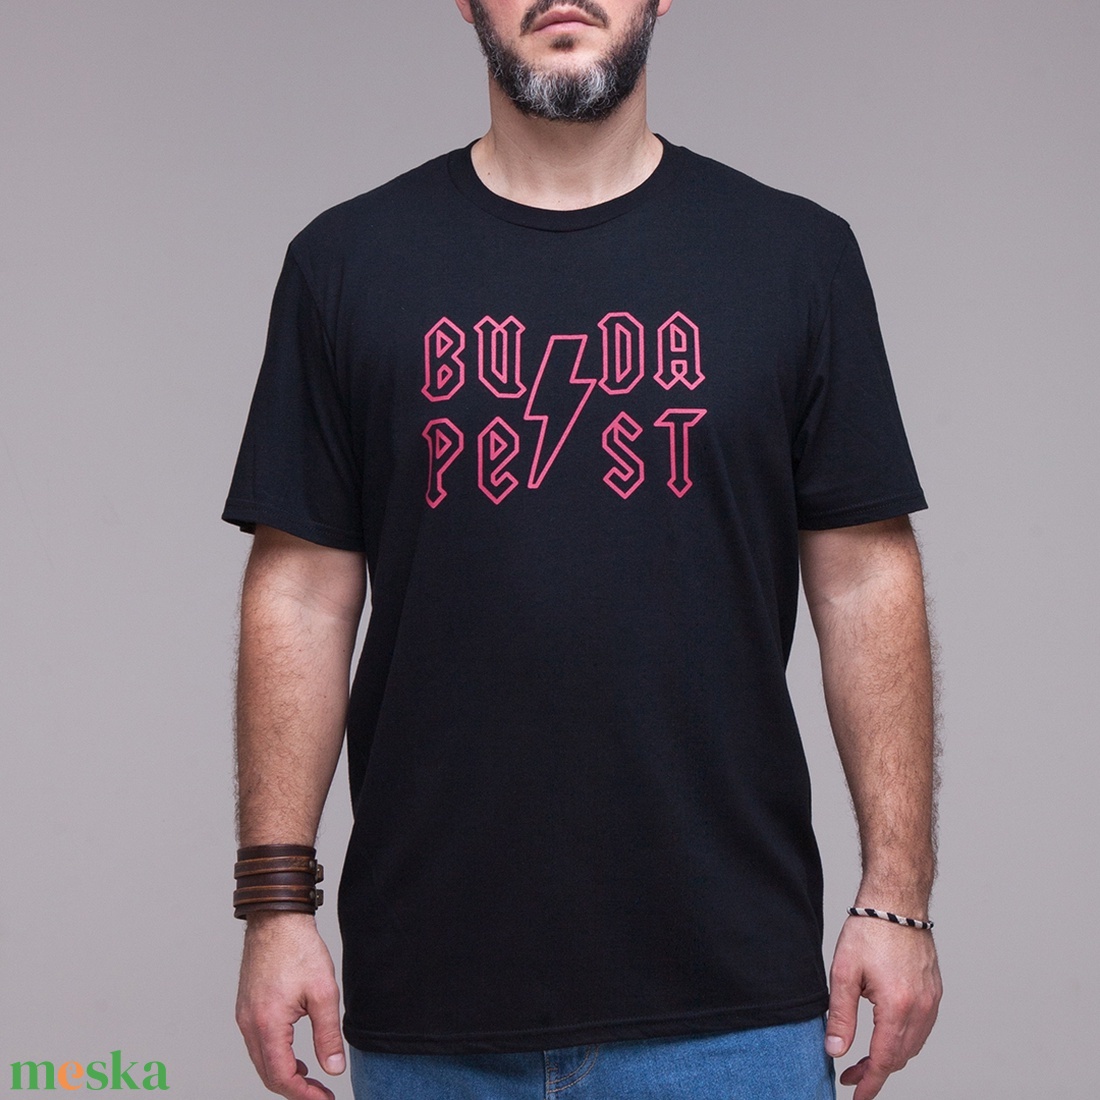 Budapest Rocker uniszex(i) póló fekete/piros - ruha & divat - férfi ruha - póló - Meska.hu